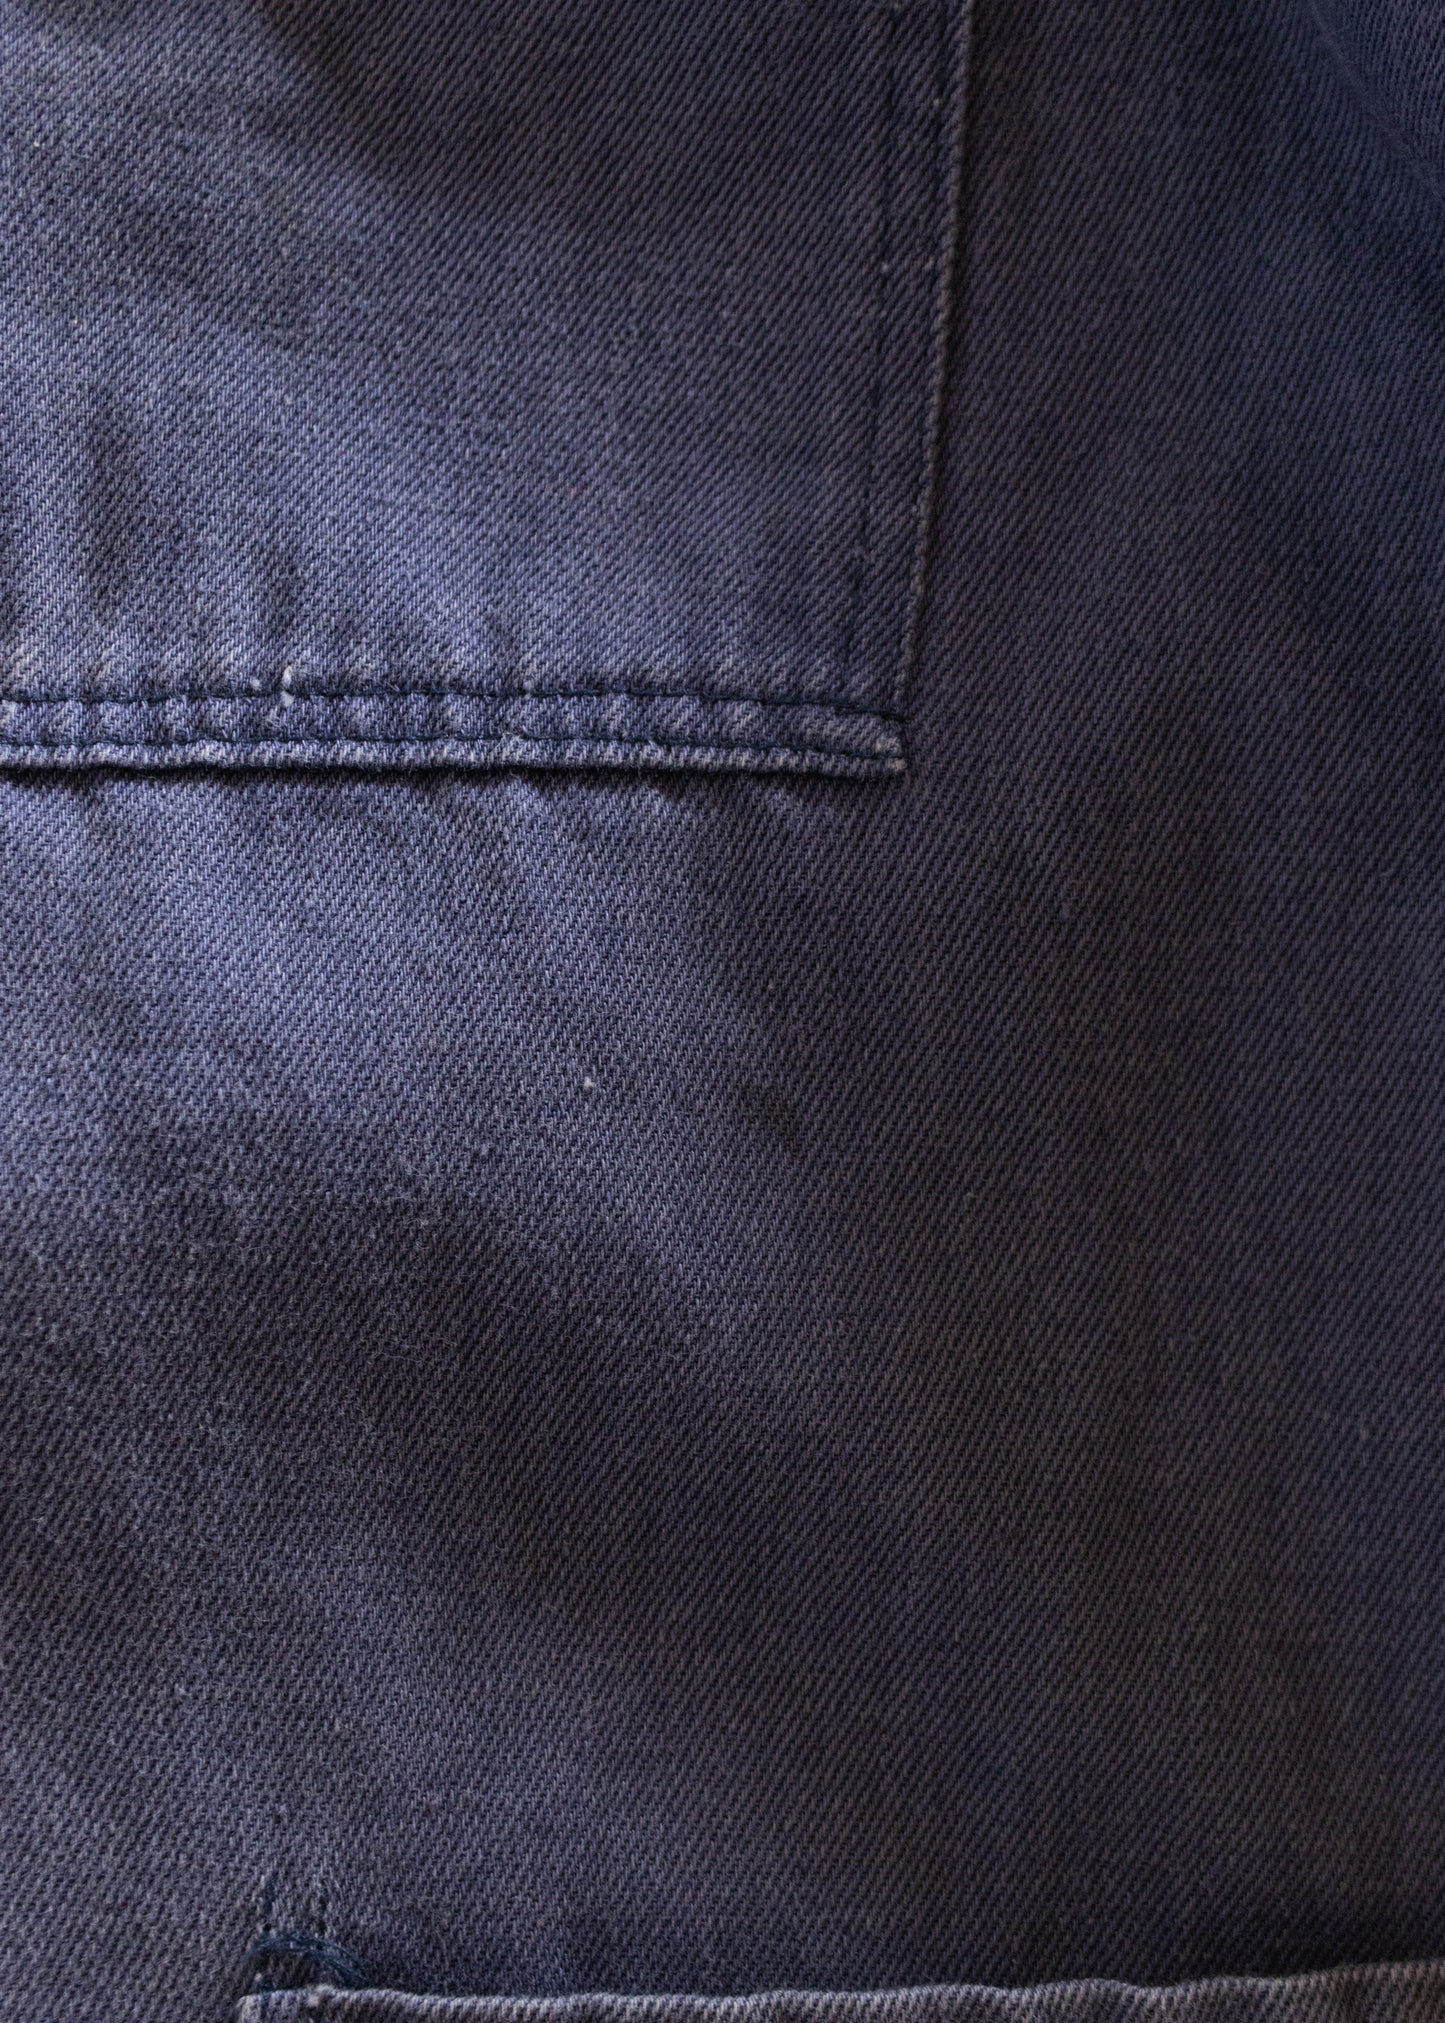 1980s Rakon French Workwear Chore Jacket Size S/M